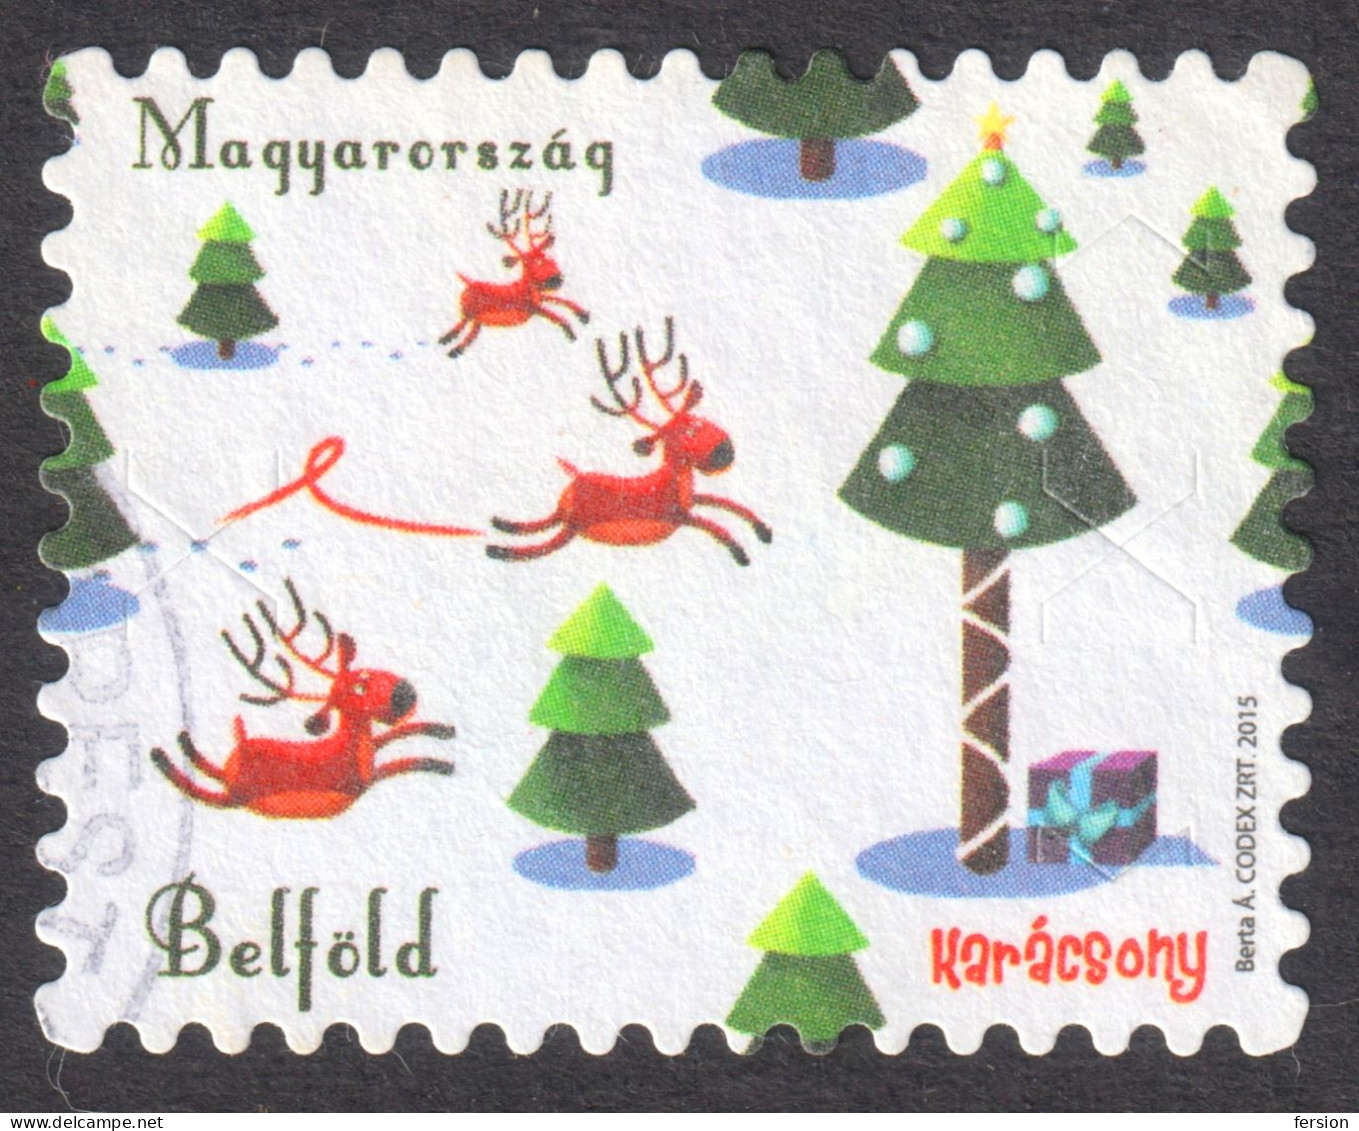 Christmas / Self Adhesive / Reindeer Gift / 2015 Hungary - Used - BUDAPEST Postmark - Usado